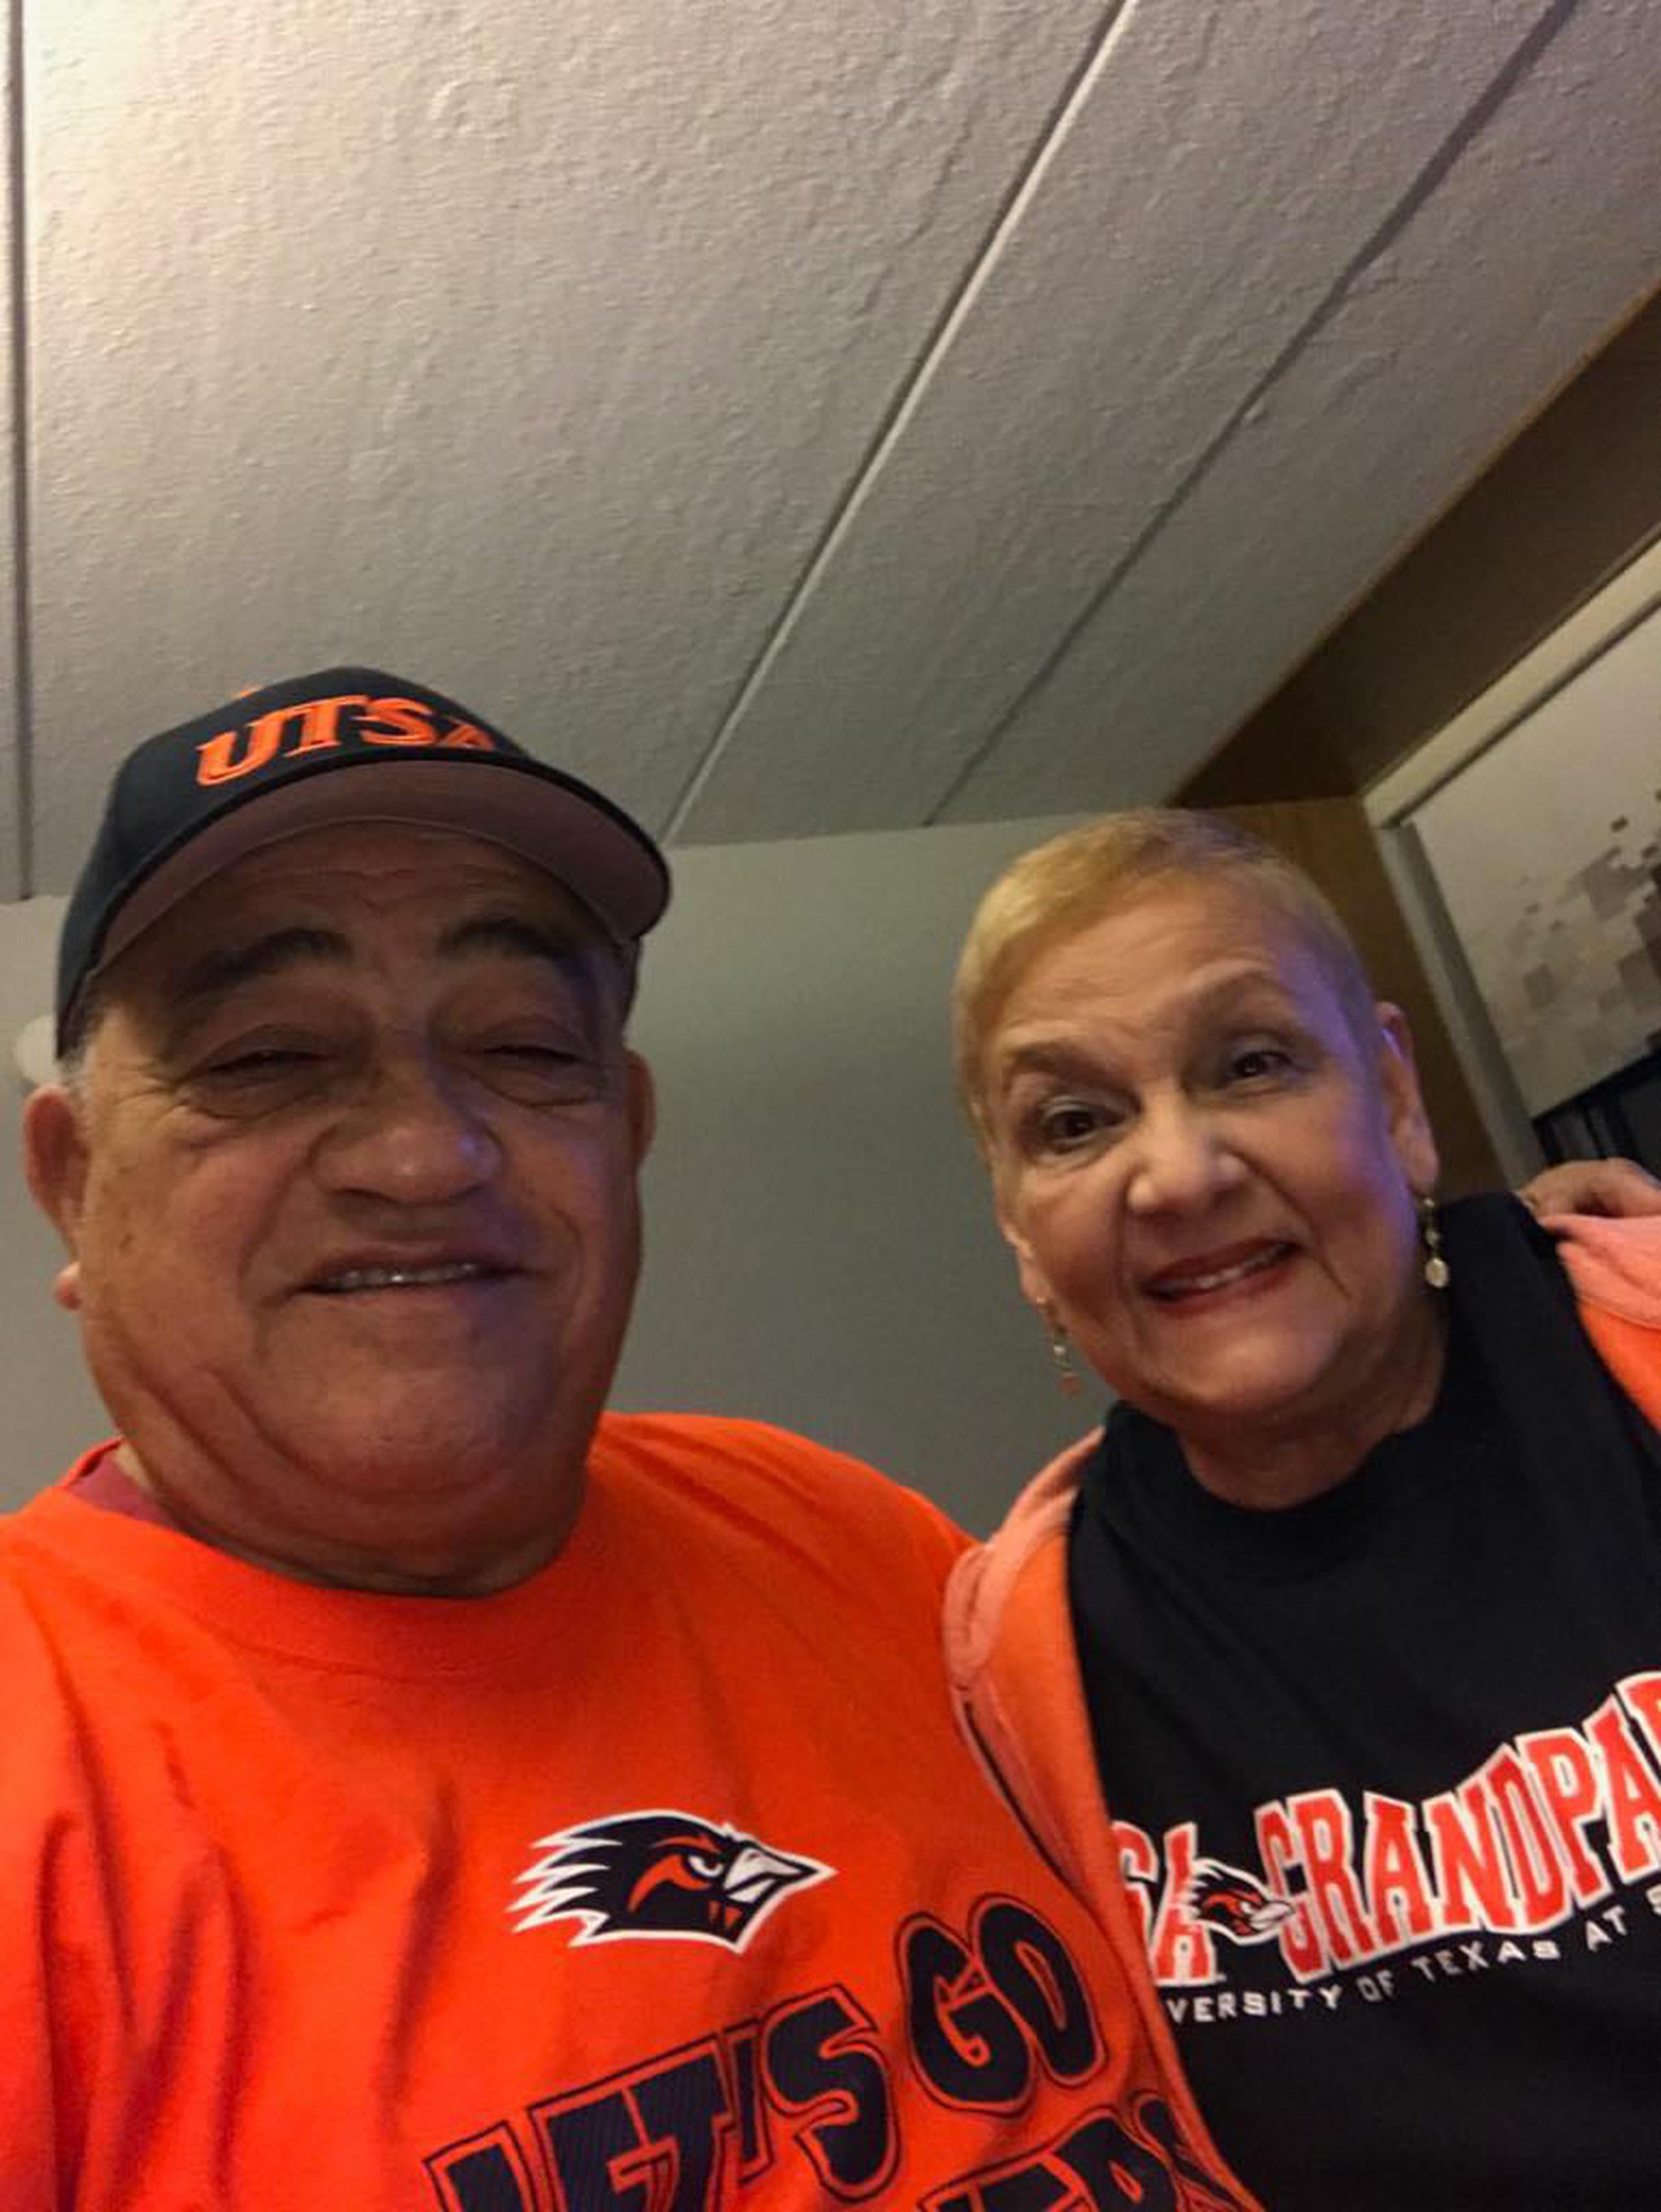 Tanto Flor Meléndez como su esposa Nilda Barrios llevaban casi un mes en aislamiento. Flor incluso llegó a estar hospitalizado.